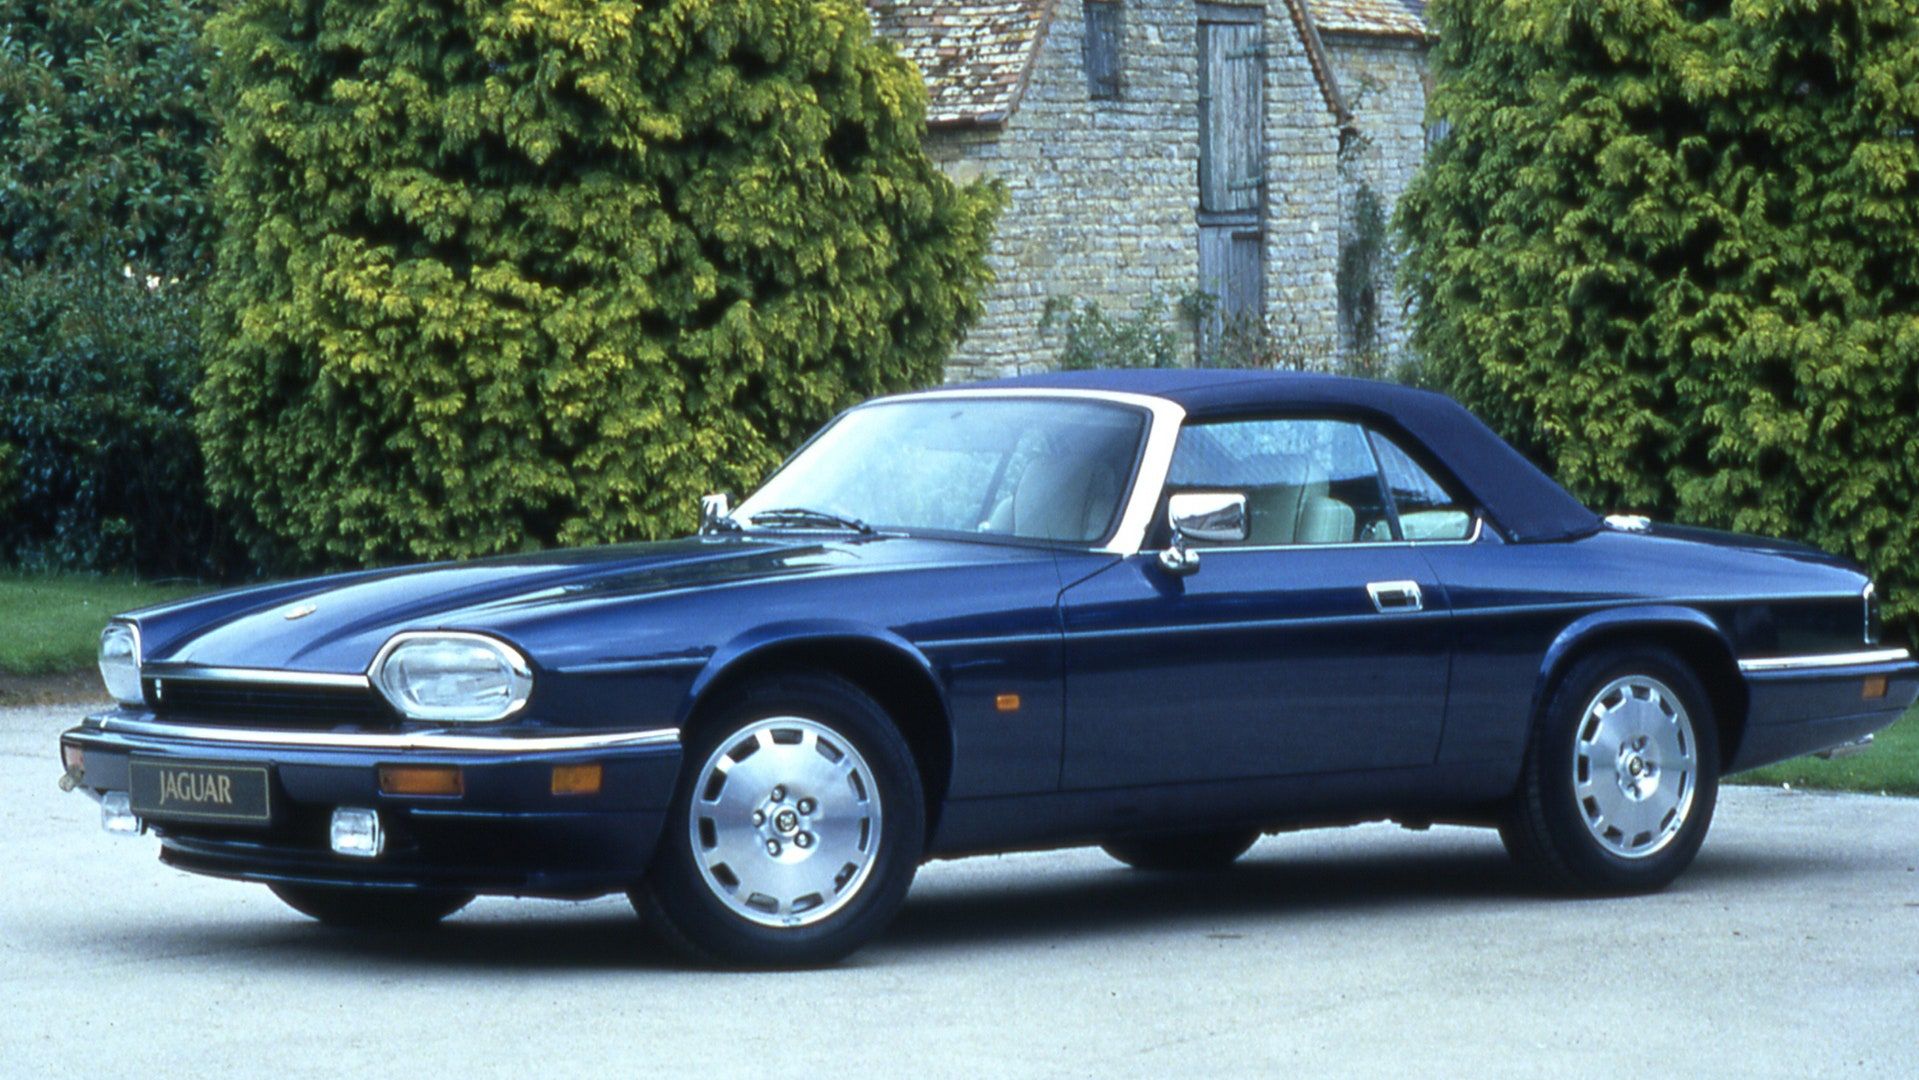 Jaguar-XJS-via-british-gq